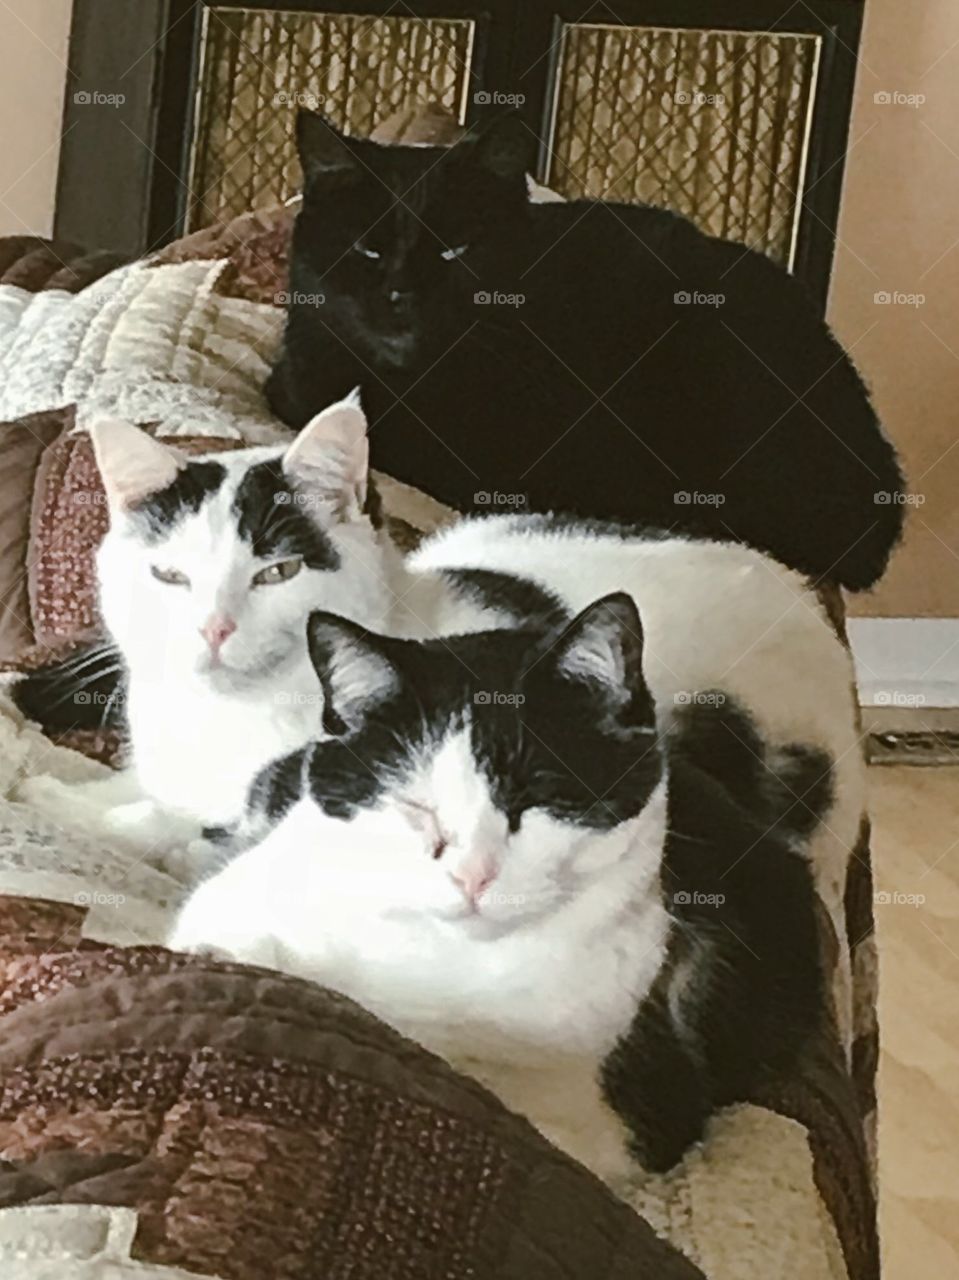 All Three Kitties on Couch Half Asleep.